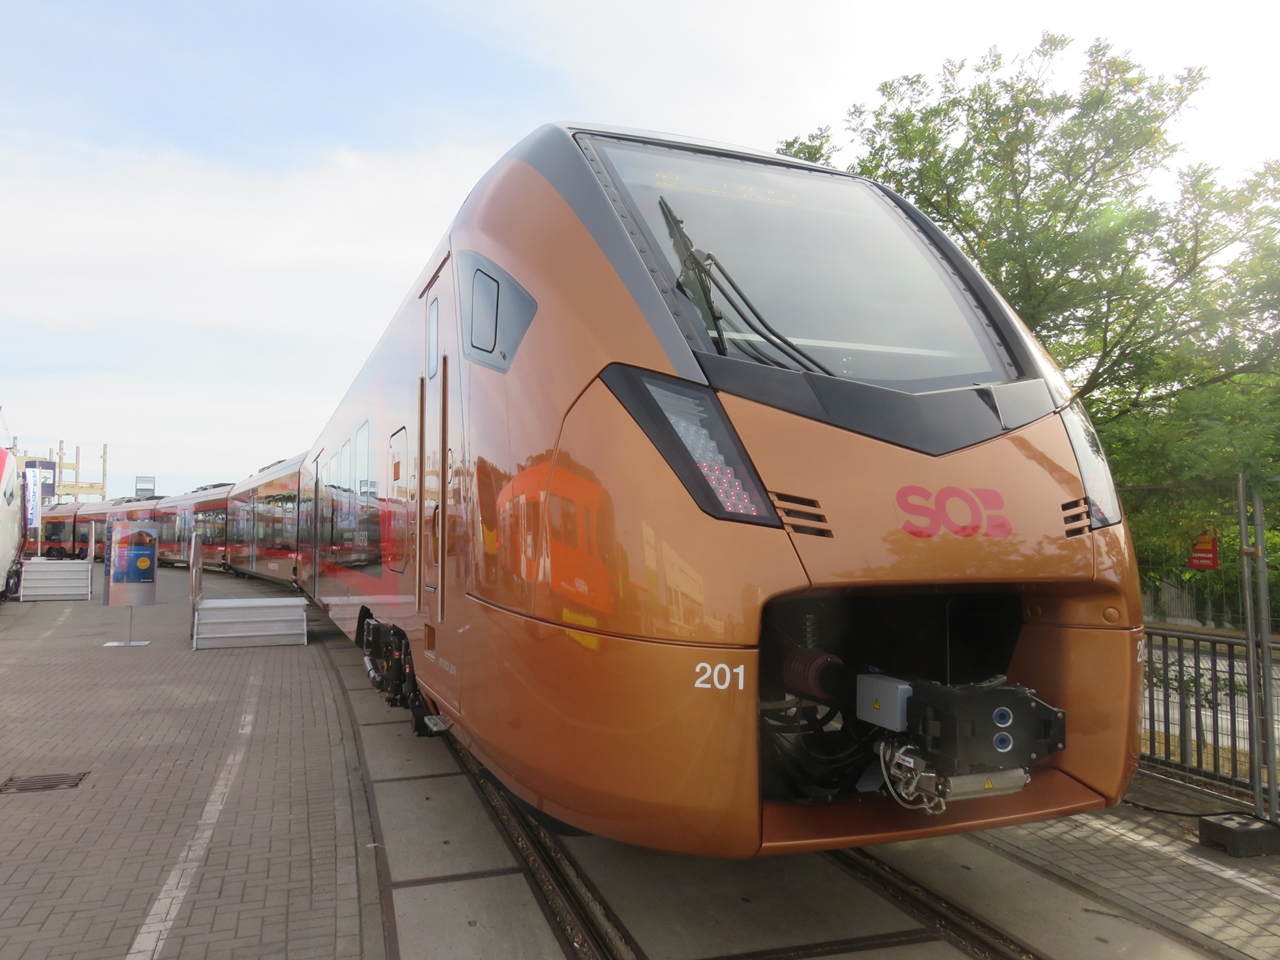 A Stadler egyik büszkesége a svájci SOB magánvasút intercity-kivitelű Flirt3-asa, mely a hangzatos Traverso ('átkelés') fantázianevet kapta (forrás: Railway Gazette)